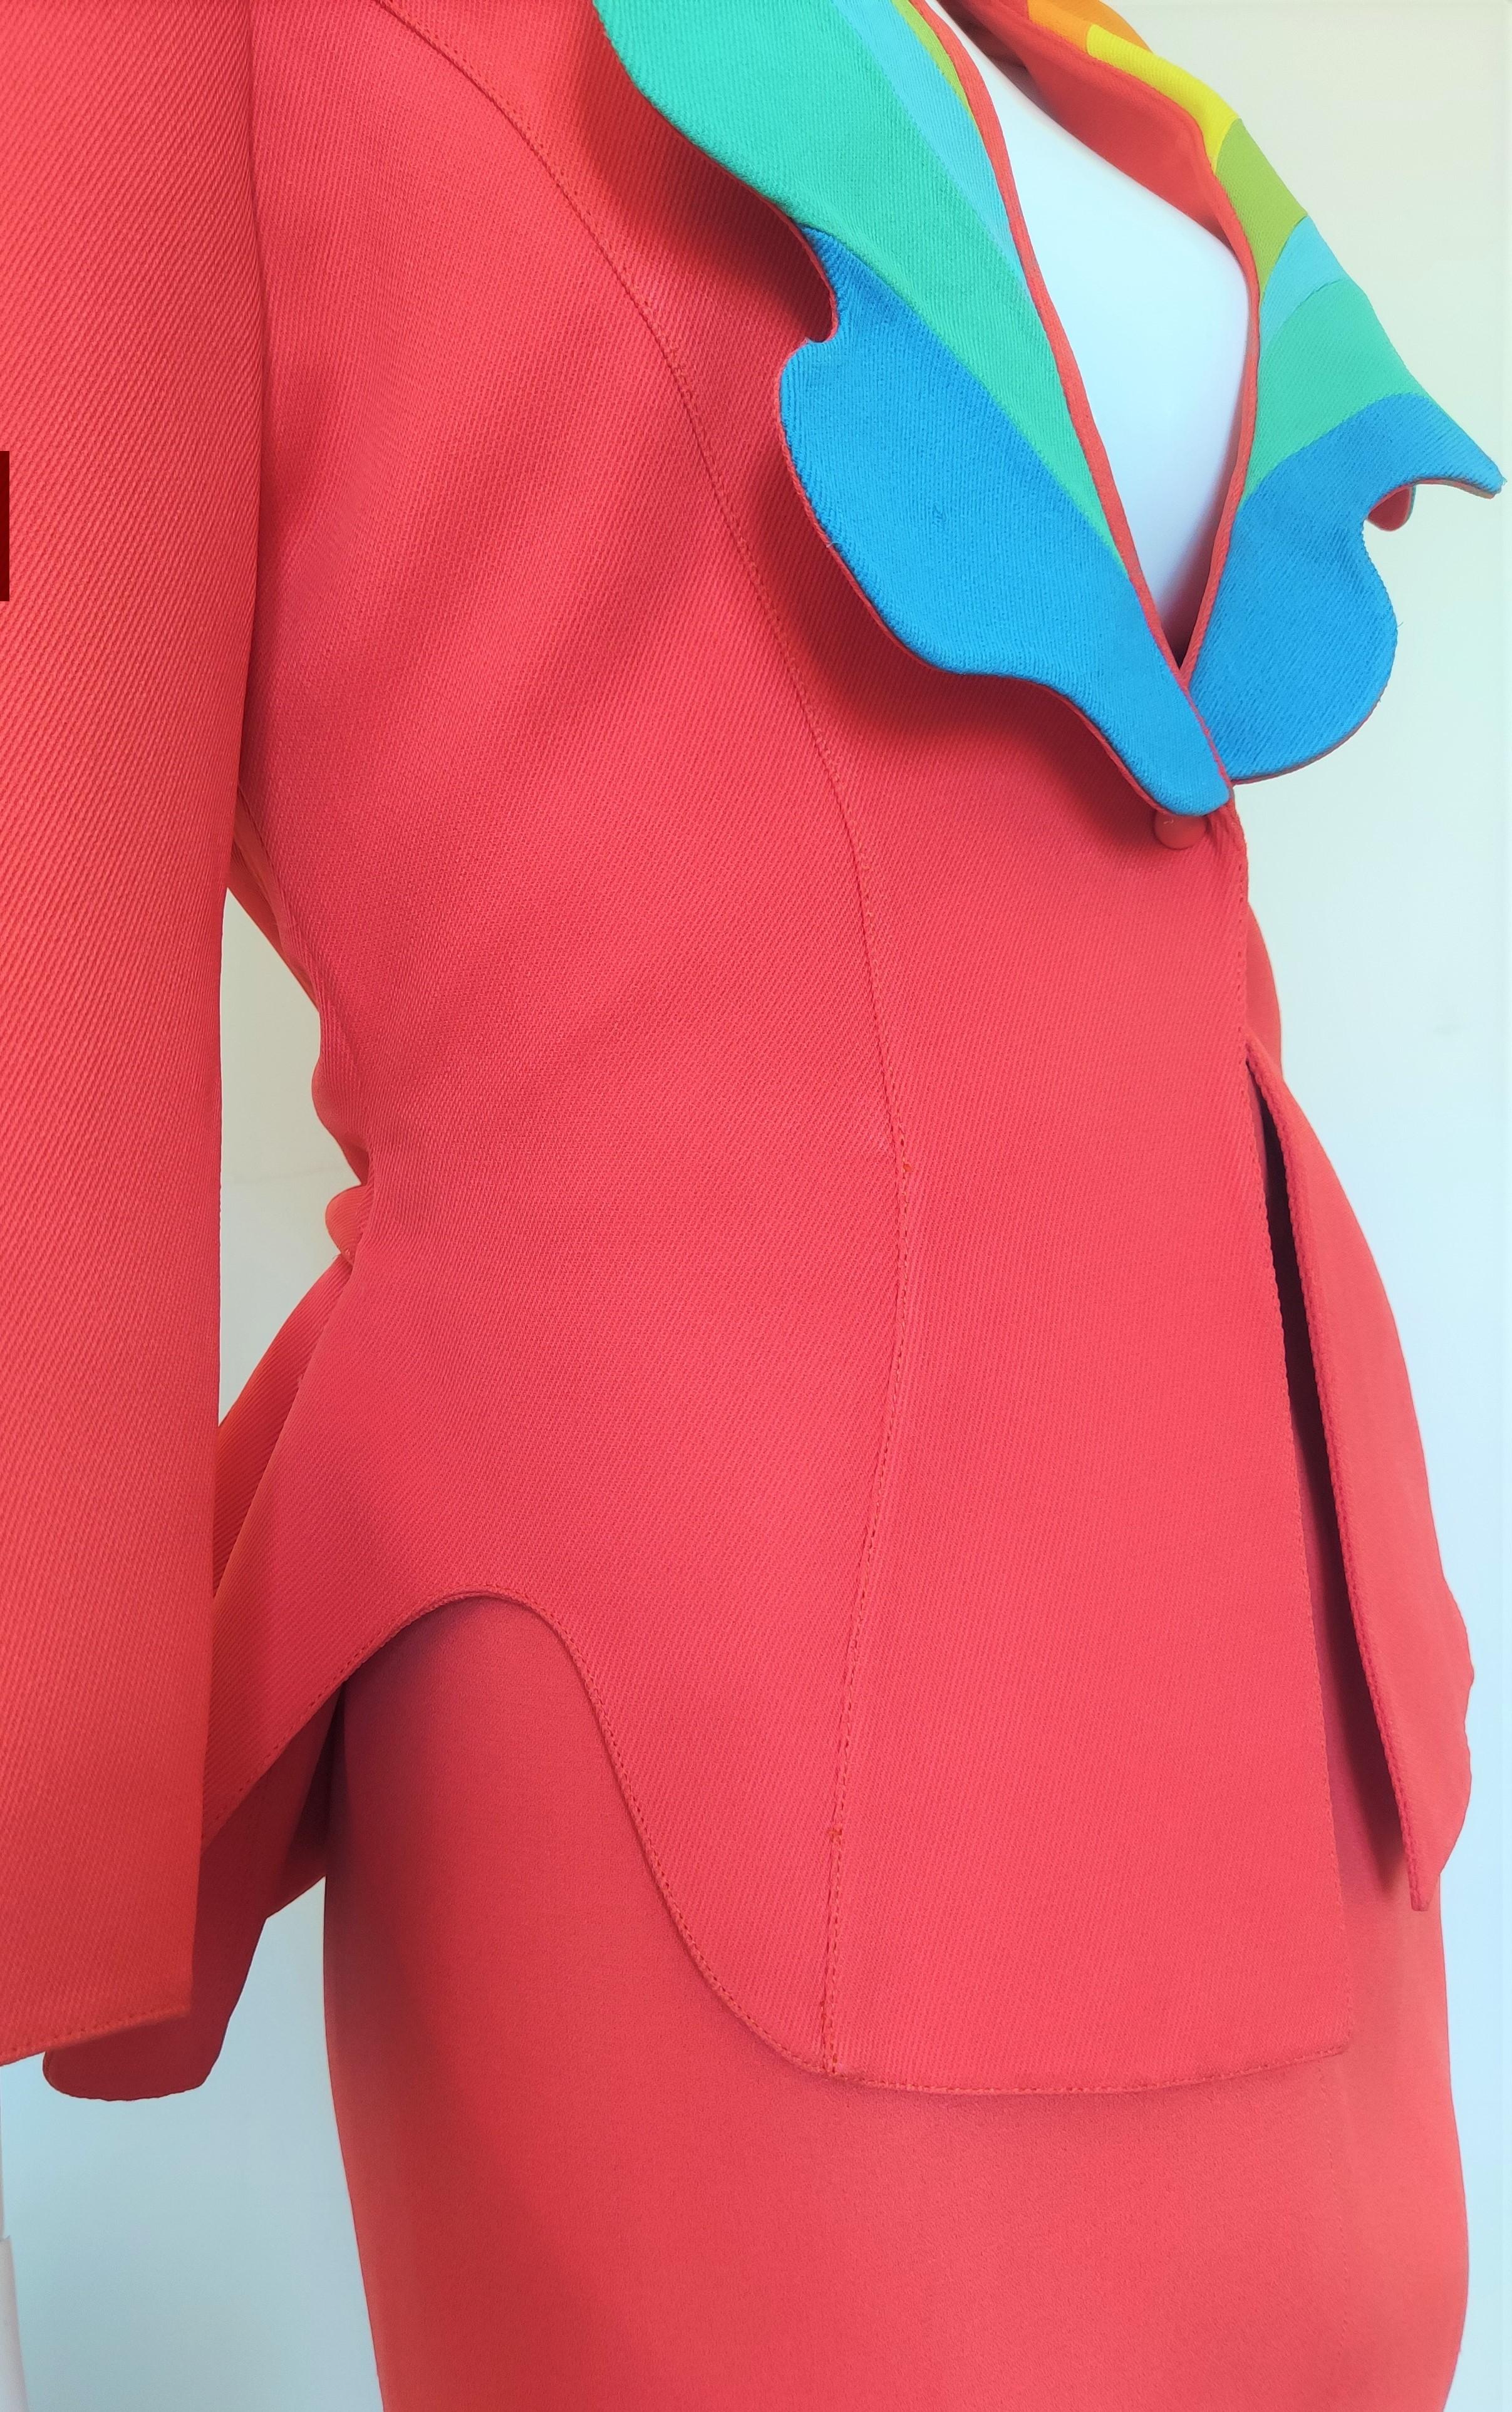 Thierry Mugler Rainbow Arc En Ciel S/S 1990 Couture Structured Ensemble Suit For Sale 9